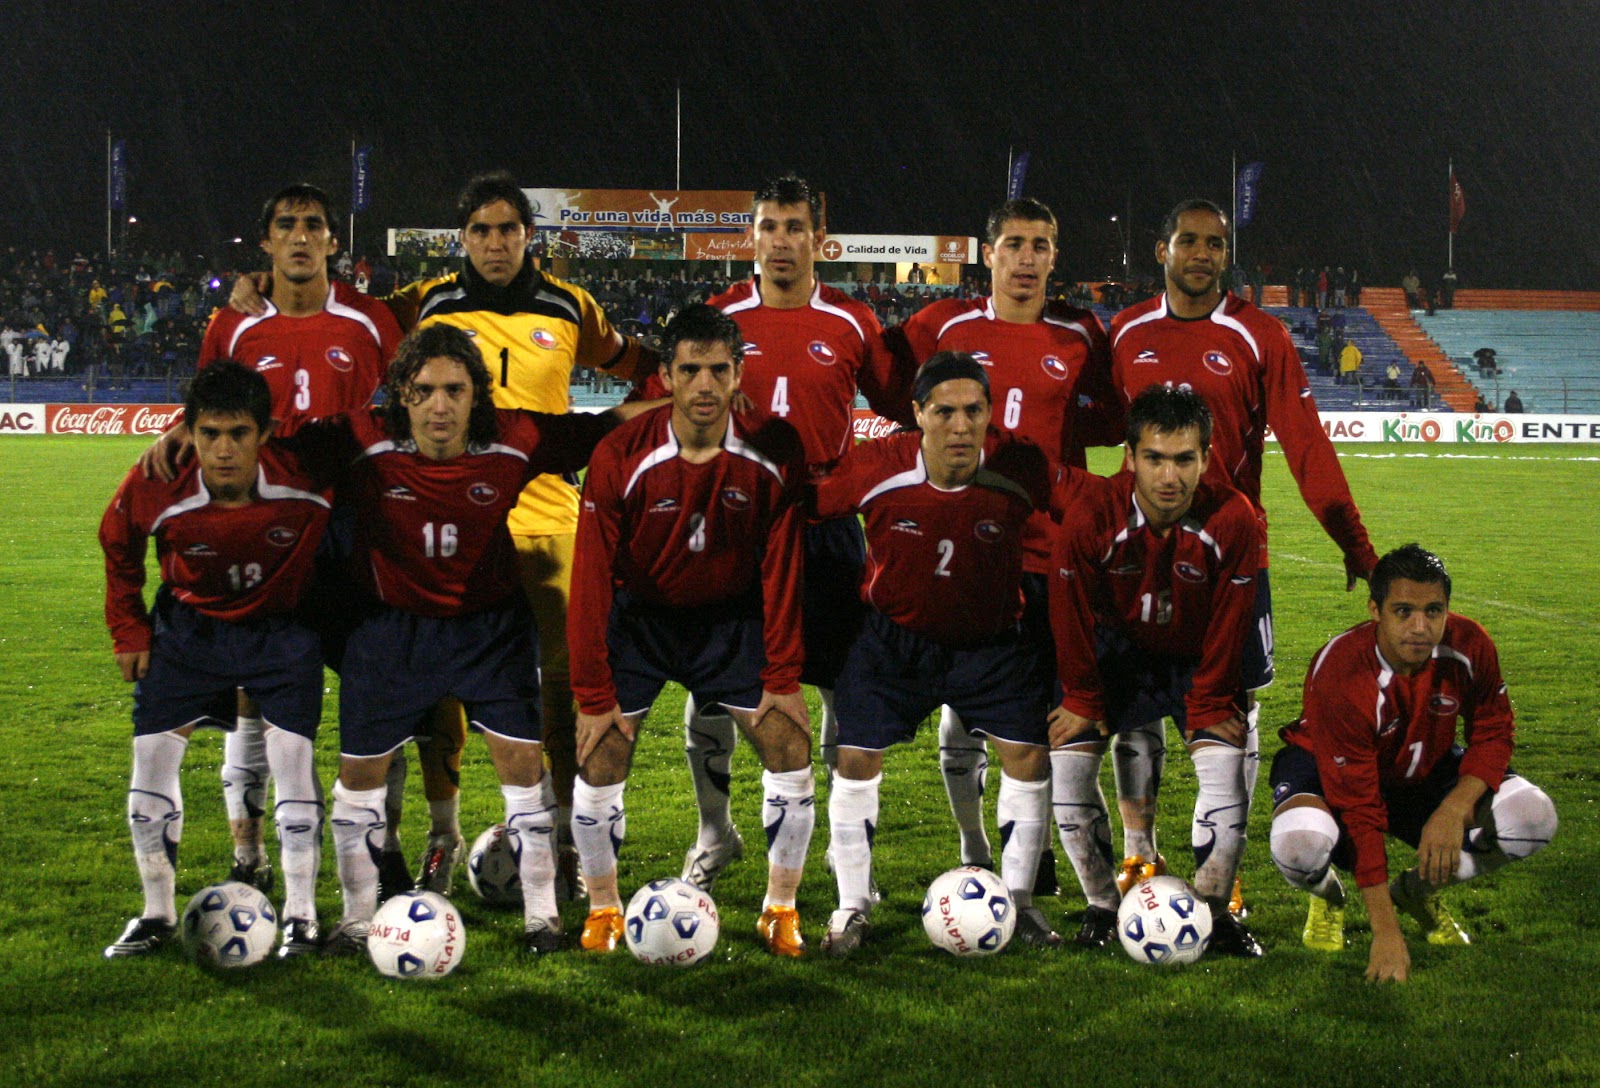 Formación de Chile ante Guatemala, amistoso disputado el 4 de junio de 2008